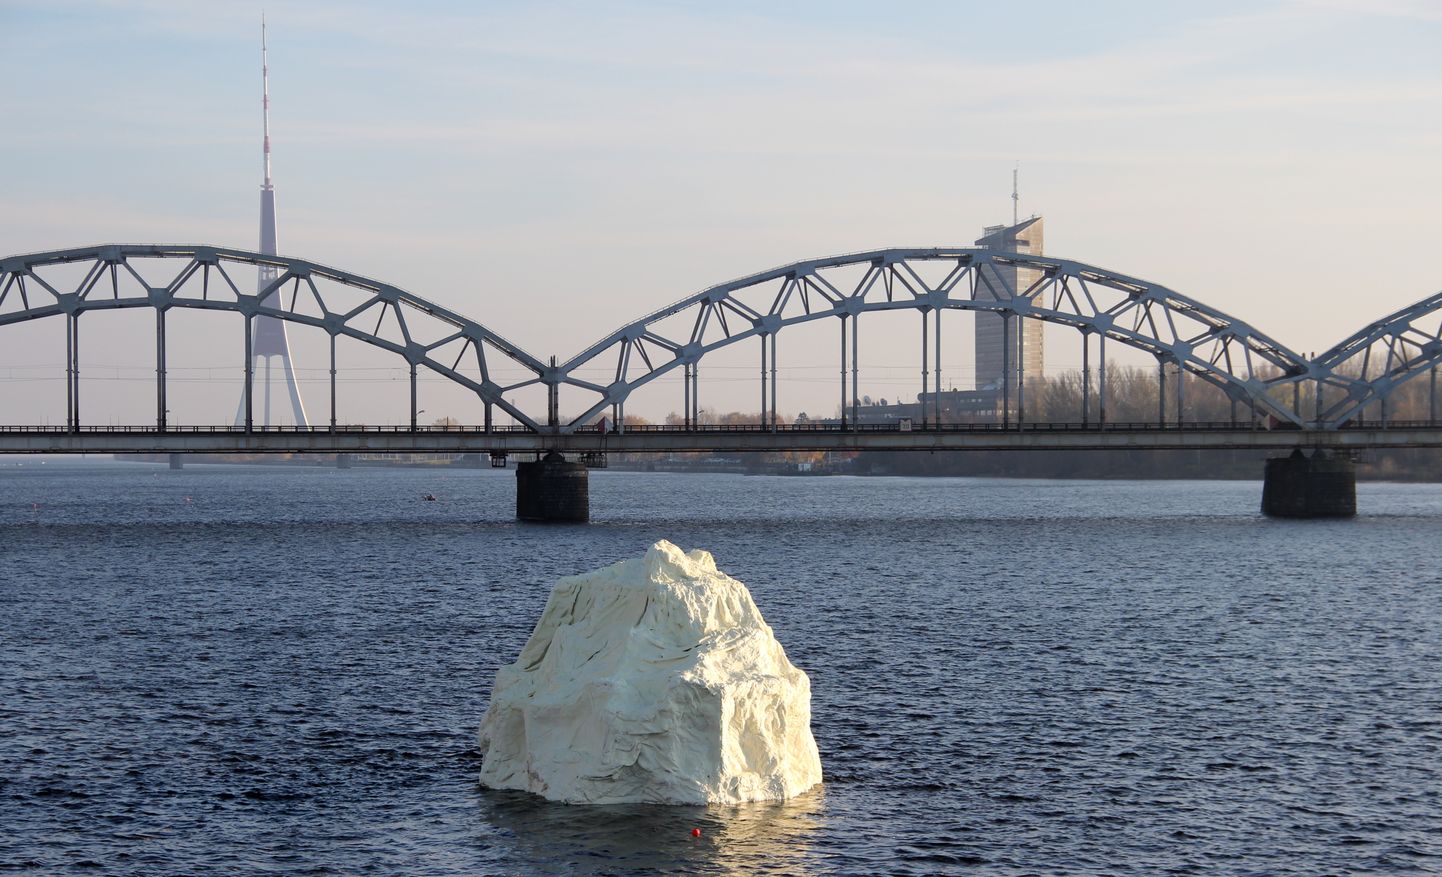 Daugavā pie Akmens tilta izvietots Korupcijas novēršanas un apkarošanas biroja sociālās kampaņas vides objekts "Korupcijas aisbergs", kas simbolizē mazu korupcijas aisberga redzamo daļu, zem sevis slēpjot plašu negatīvo ietekmi gan uz korupcijā iesaistītajiem dalībniekiem, gan sabiedrību kopumā.